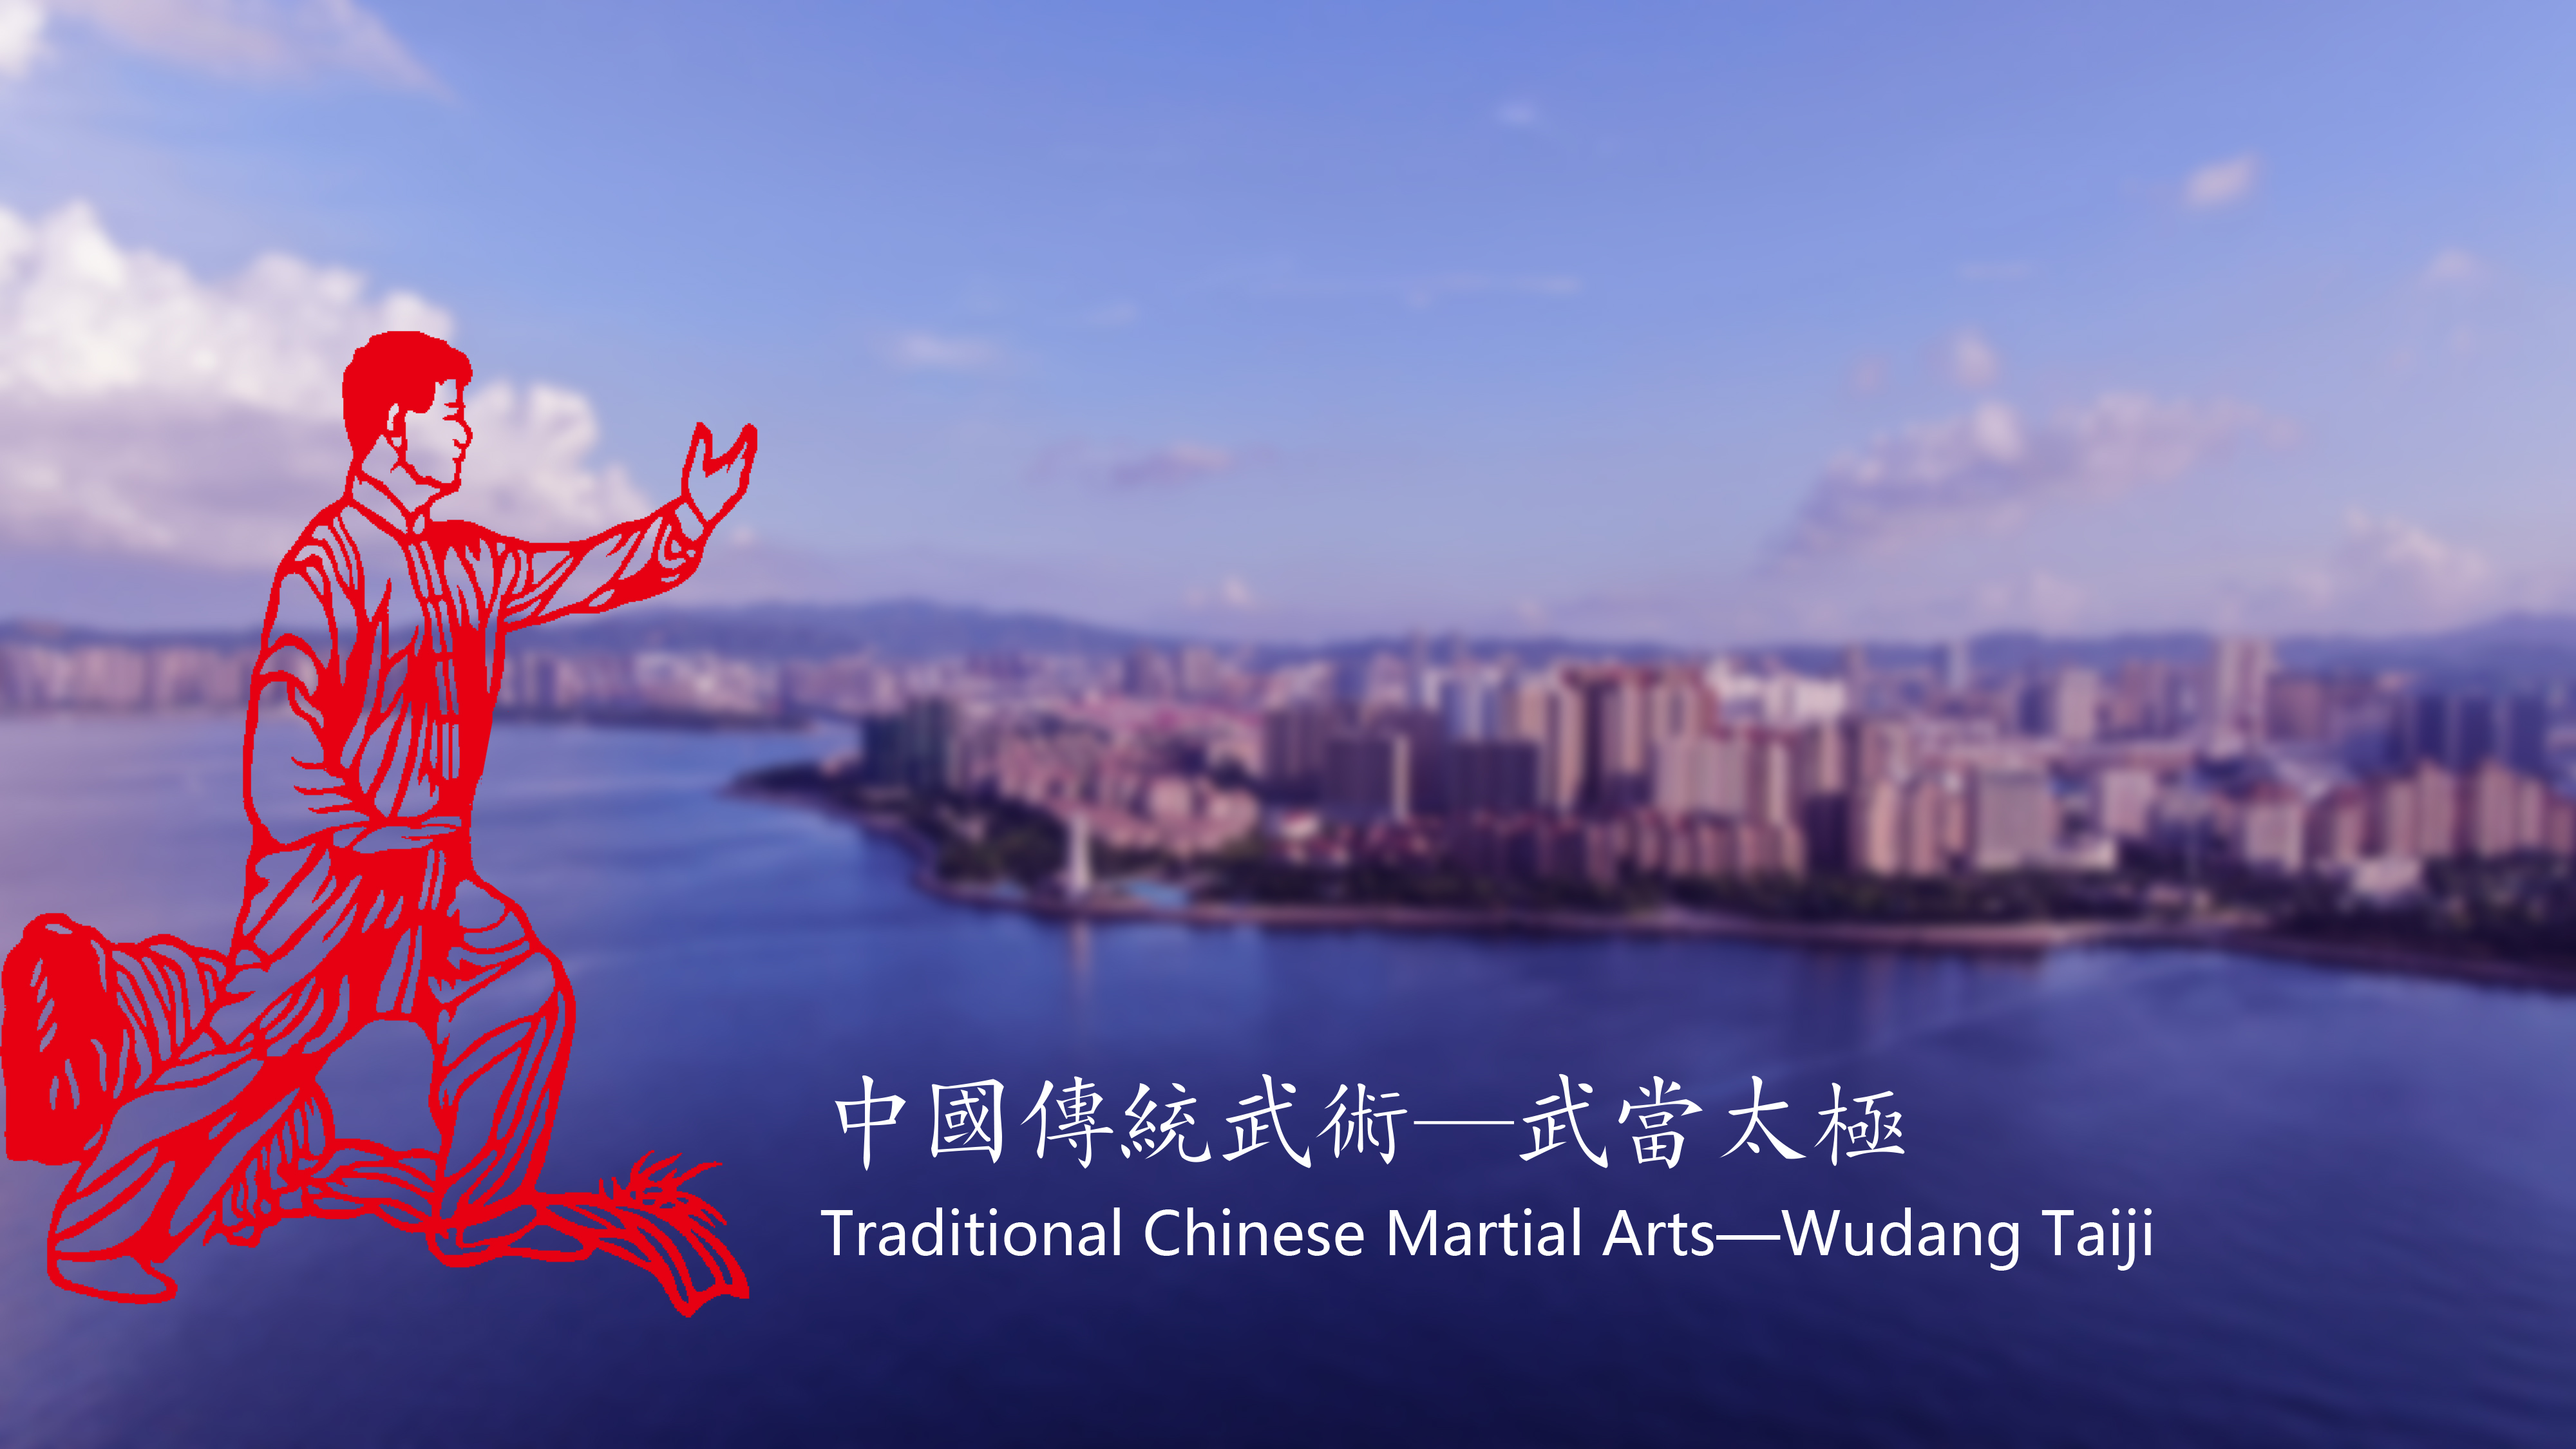 Traditional Chinese Martial Arts—Wudang Taiji